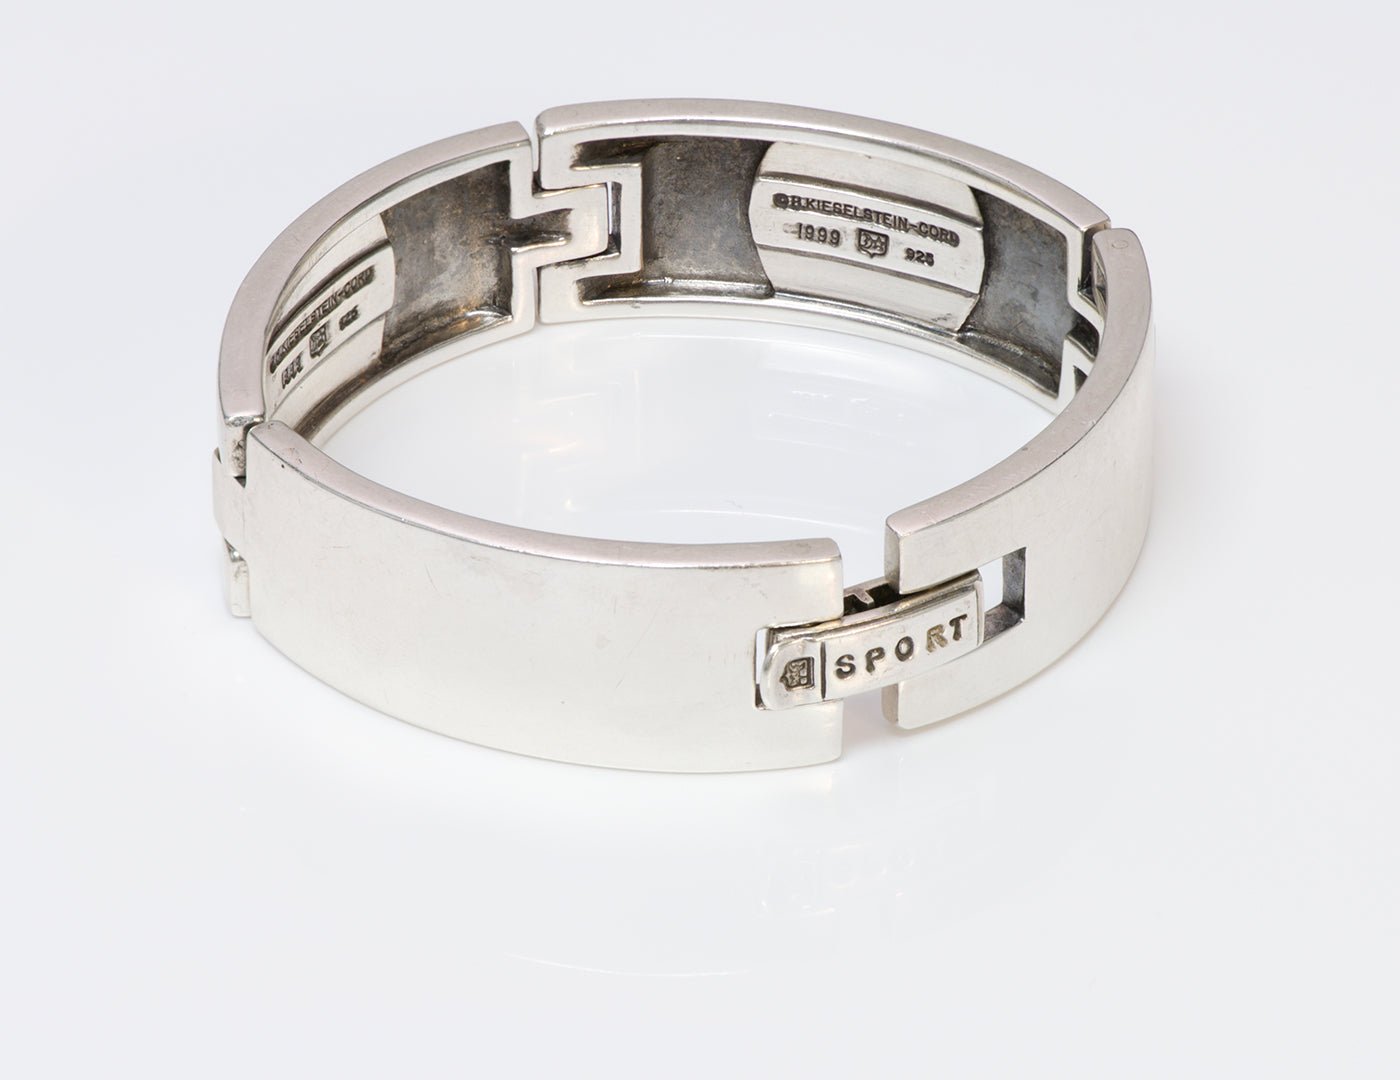 Barry Kieselstein Cord Sport Sterling Silver Bracelet - DSF Antique Jewelry